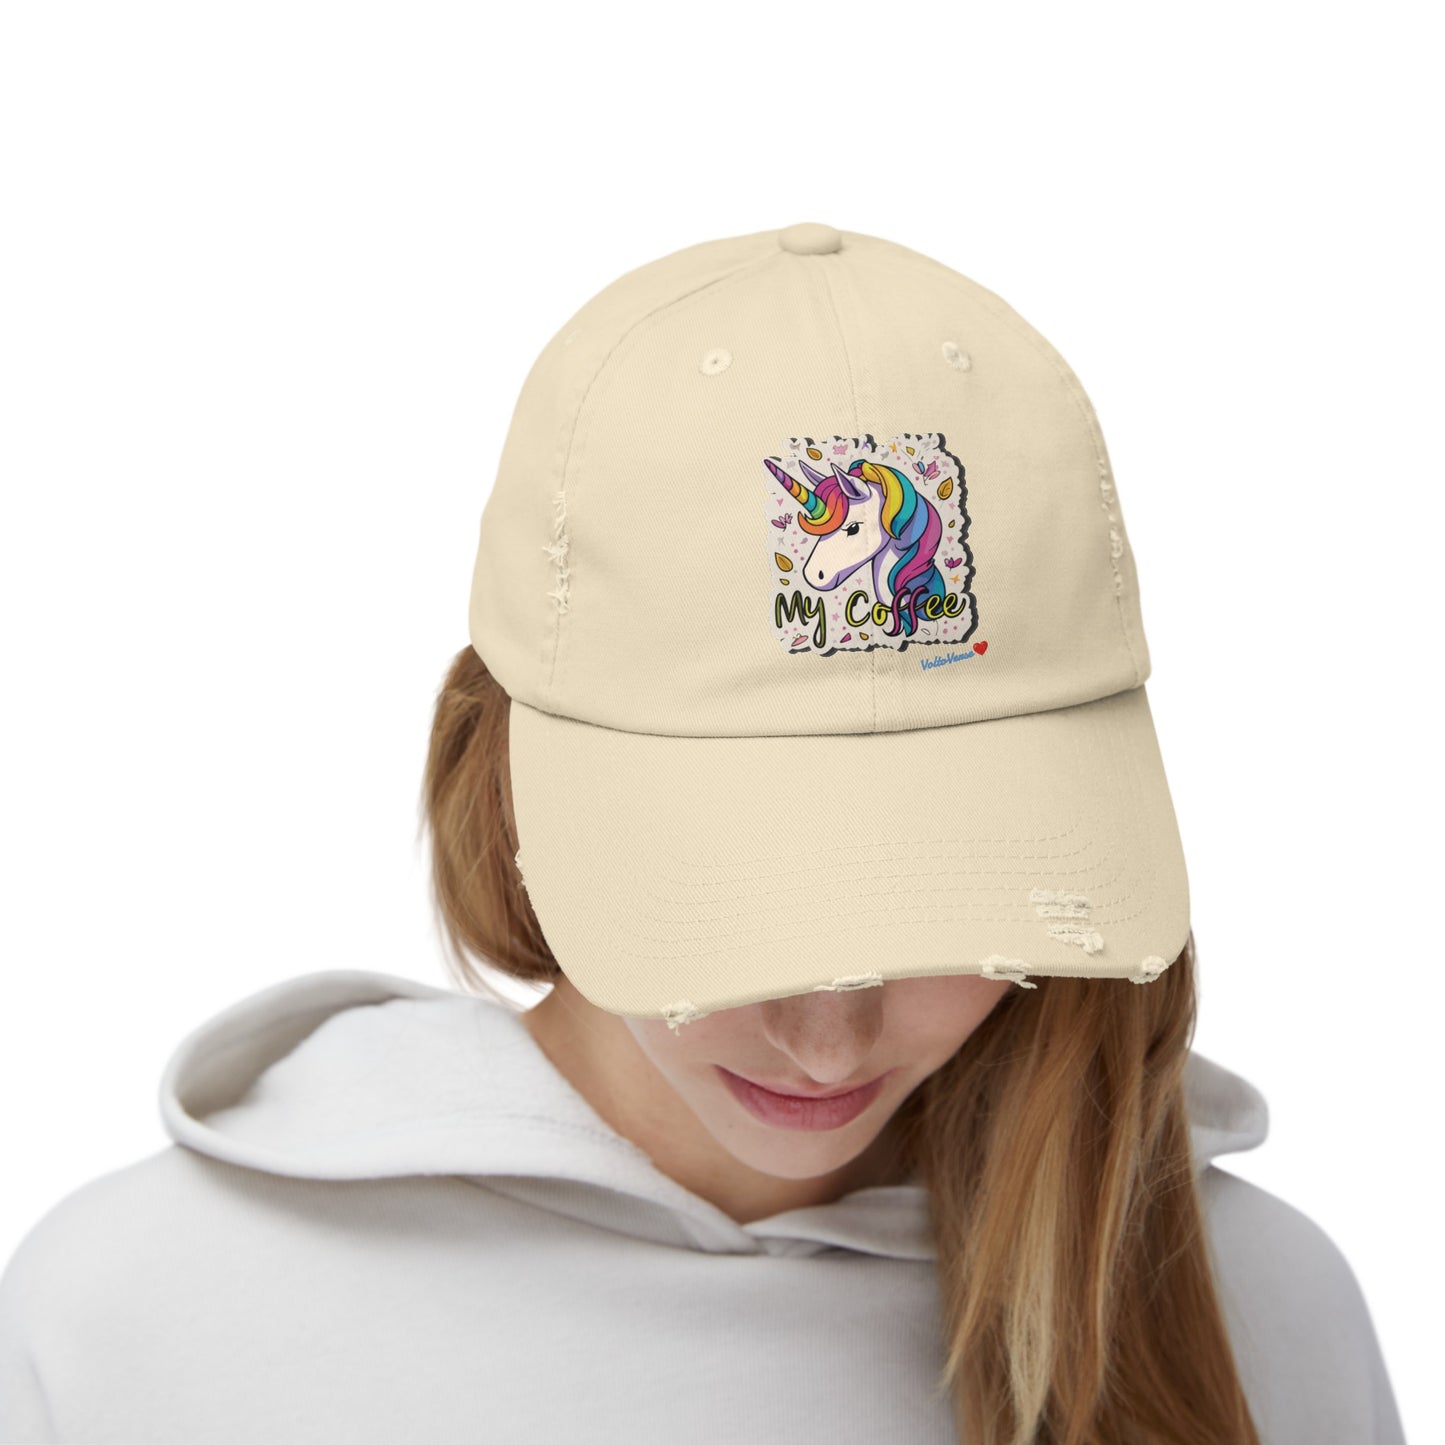 Unicorn Distressed Cap